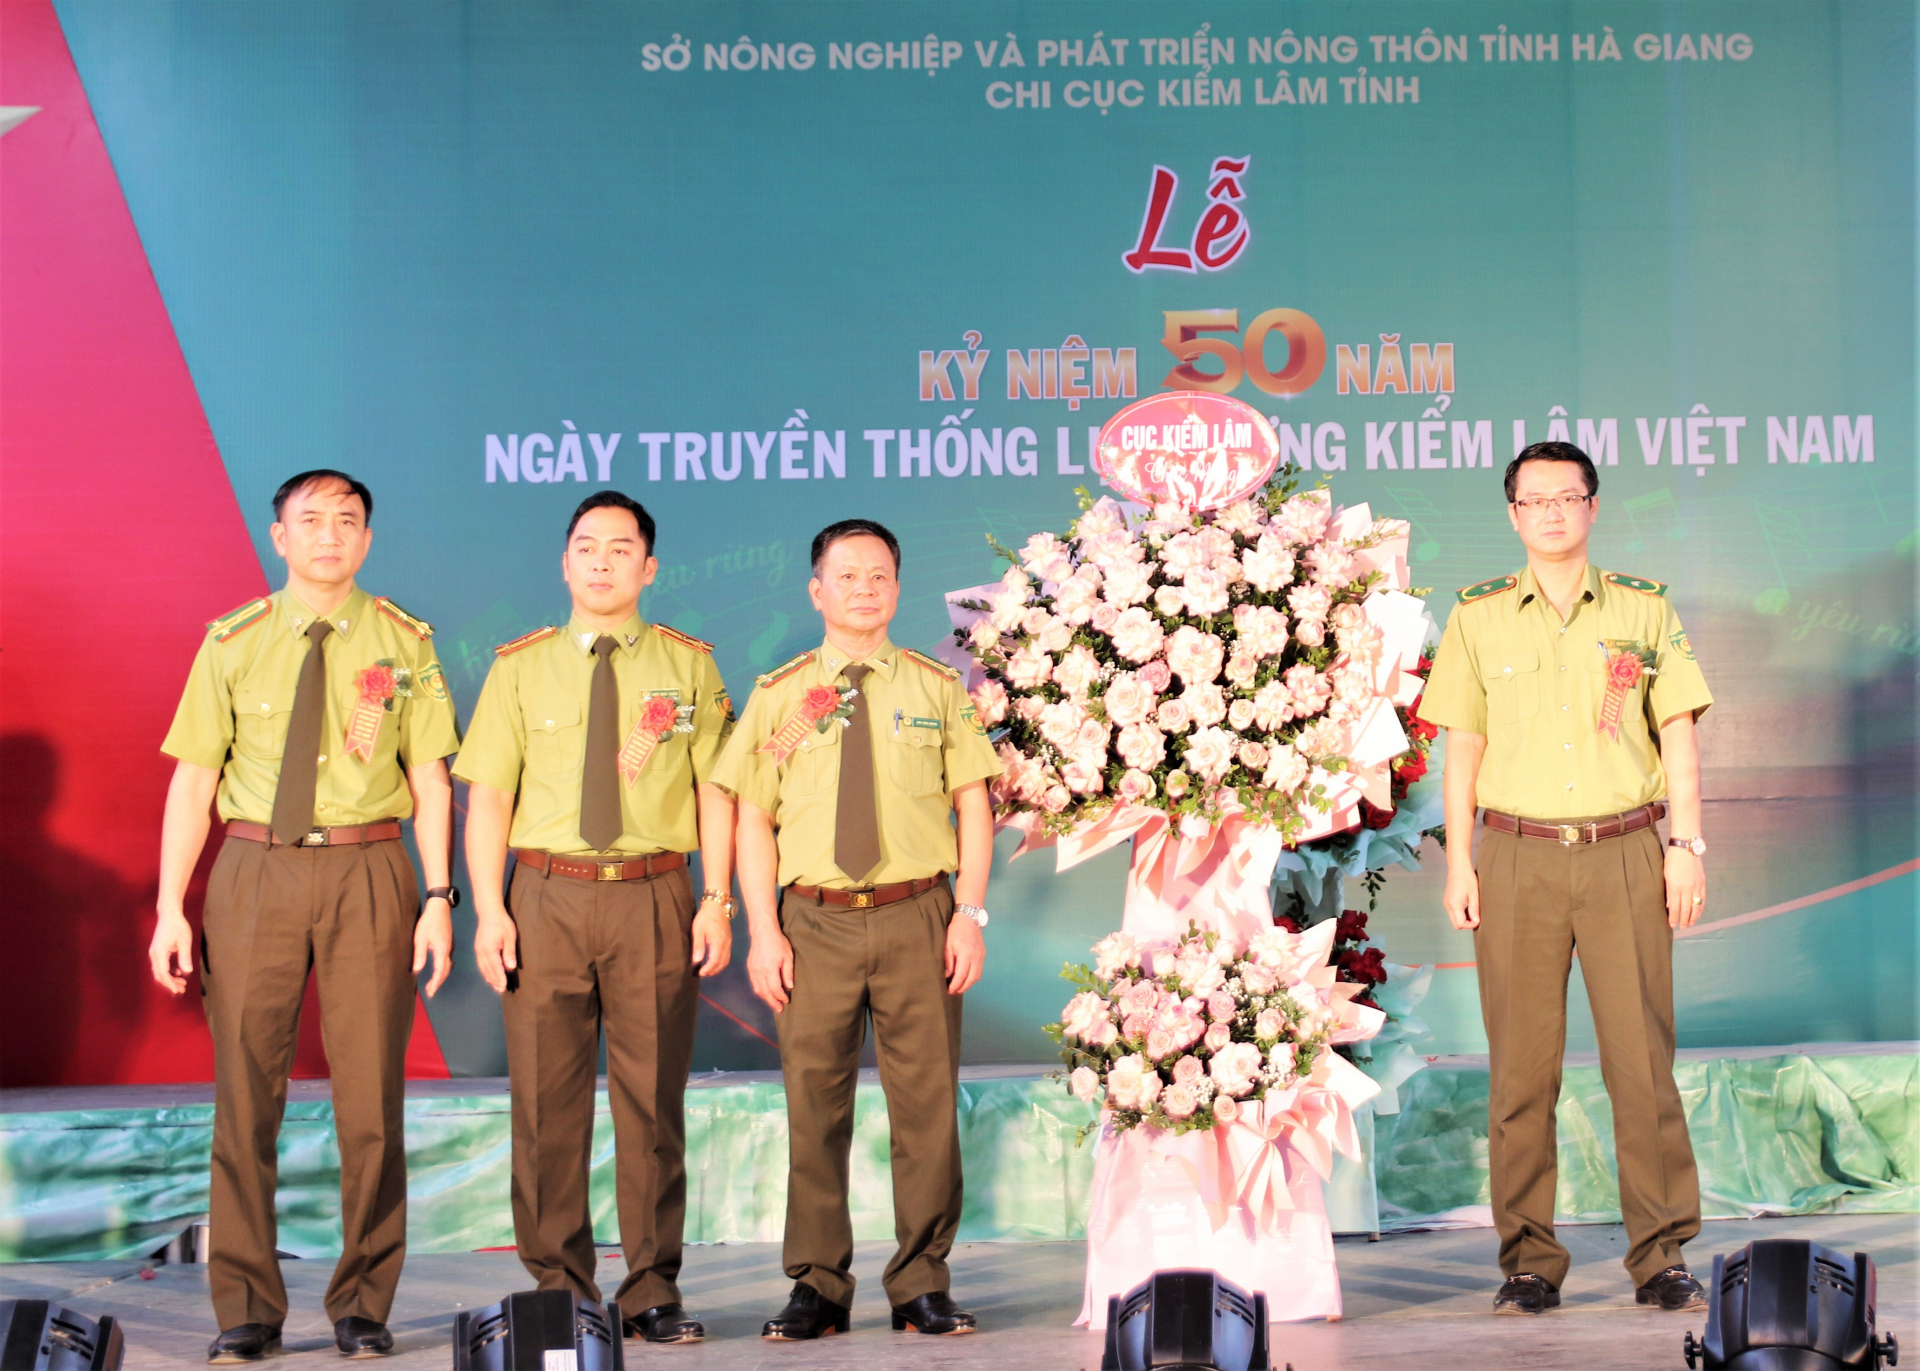 Phó Cục trưởng Cục Kiểm lâm Việt Nam Nguyễn Quốc Hiệu tặng lẵng hoa chúc mừng ngành Kiểm lâm tỉnh.